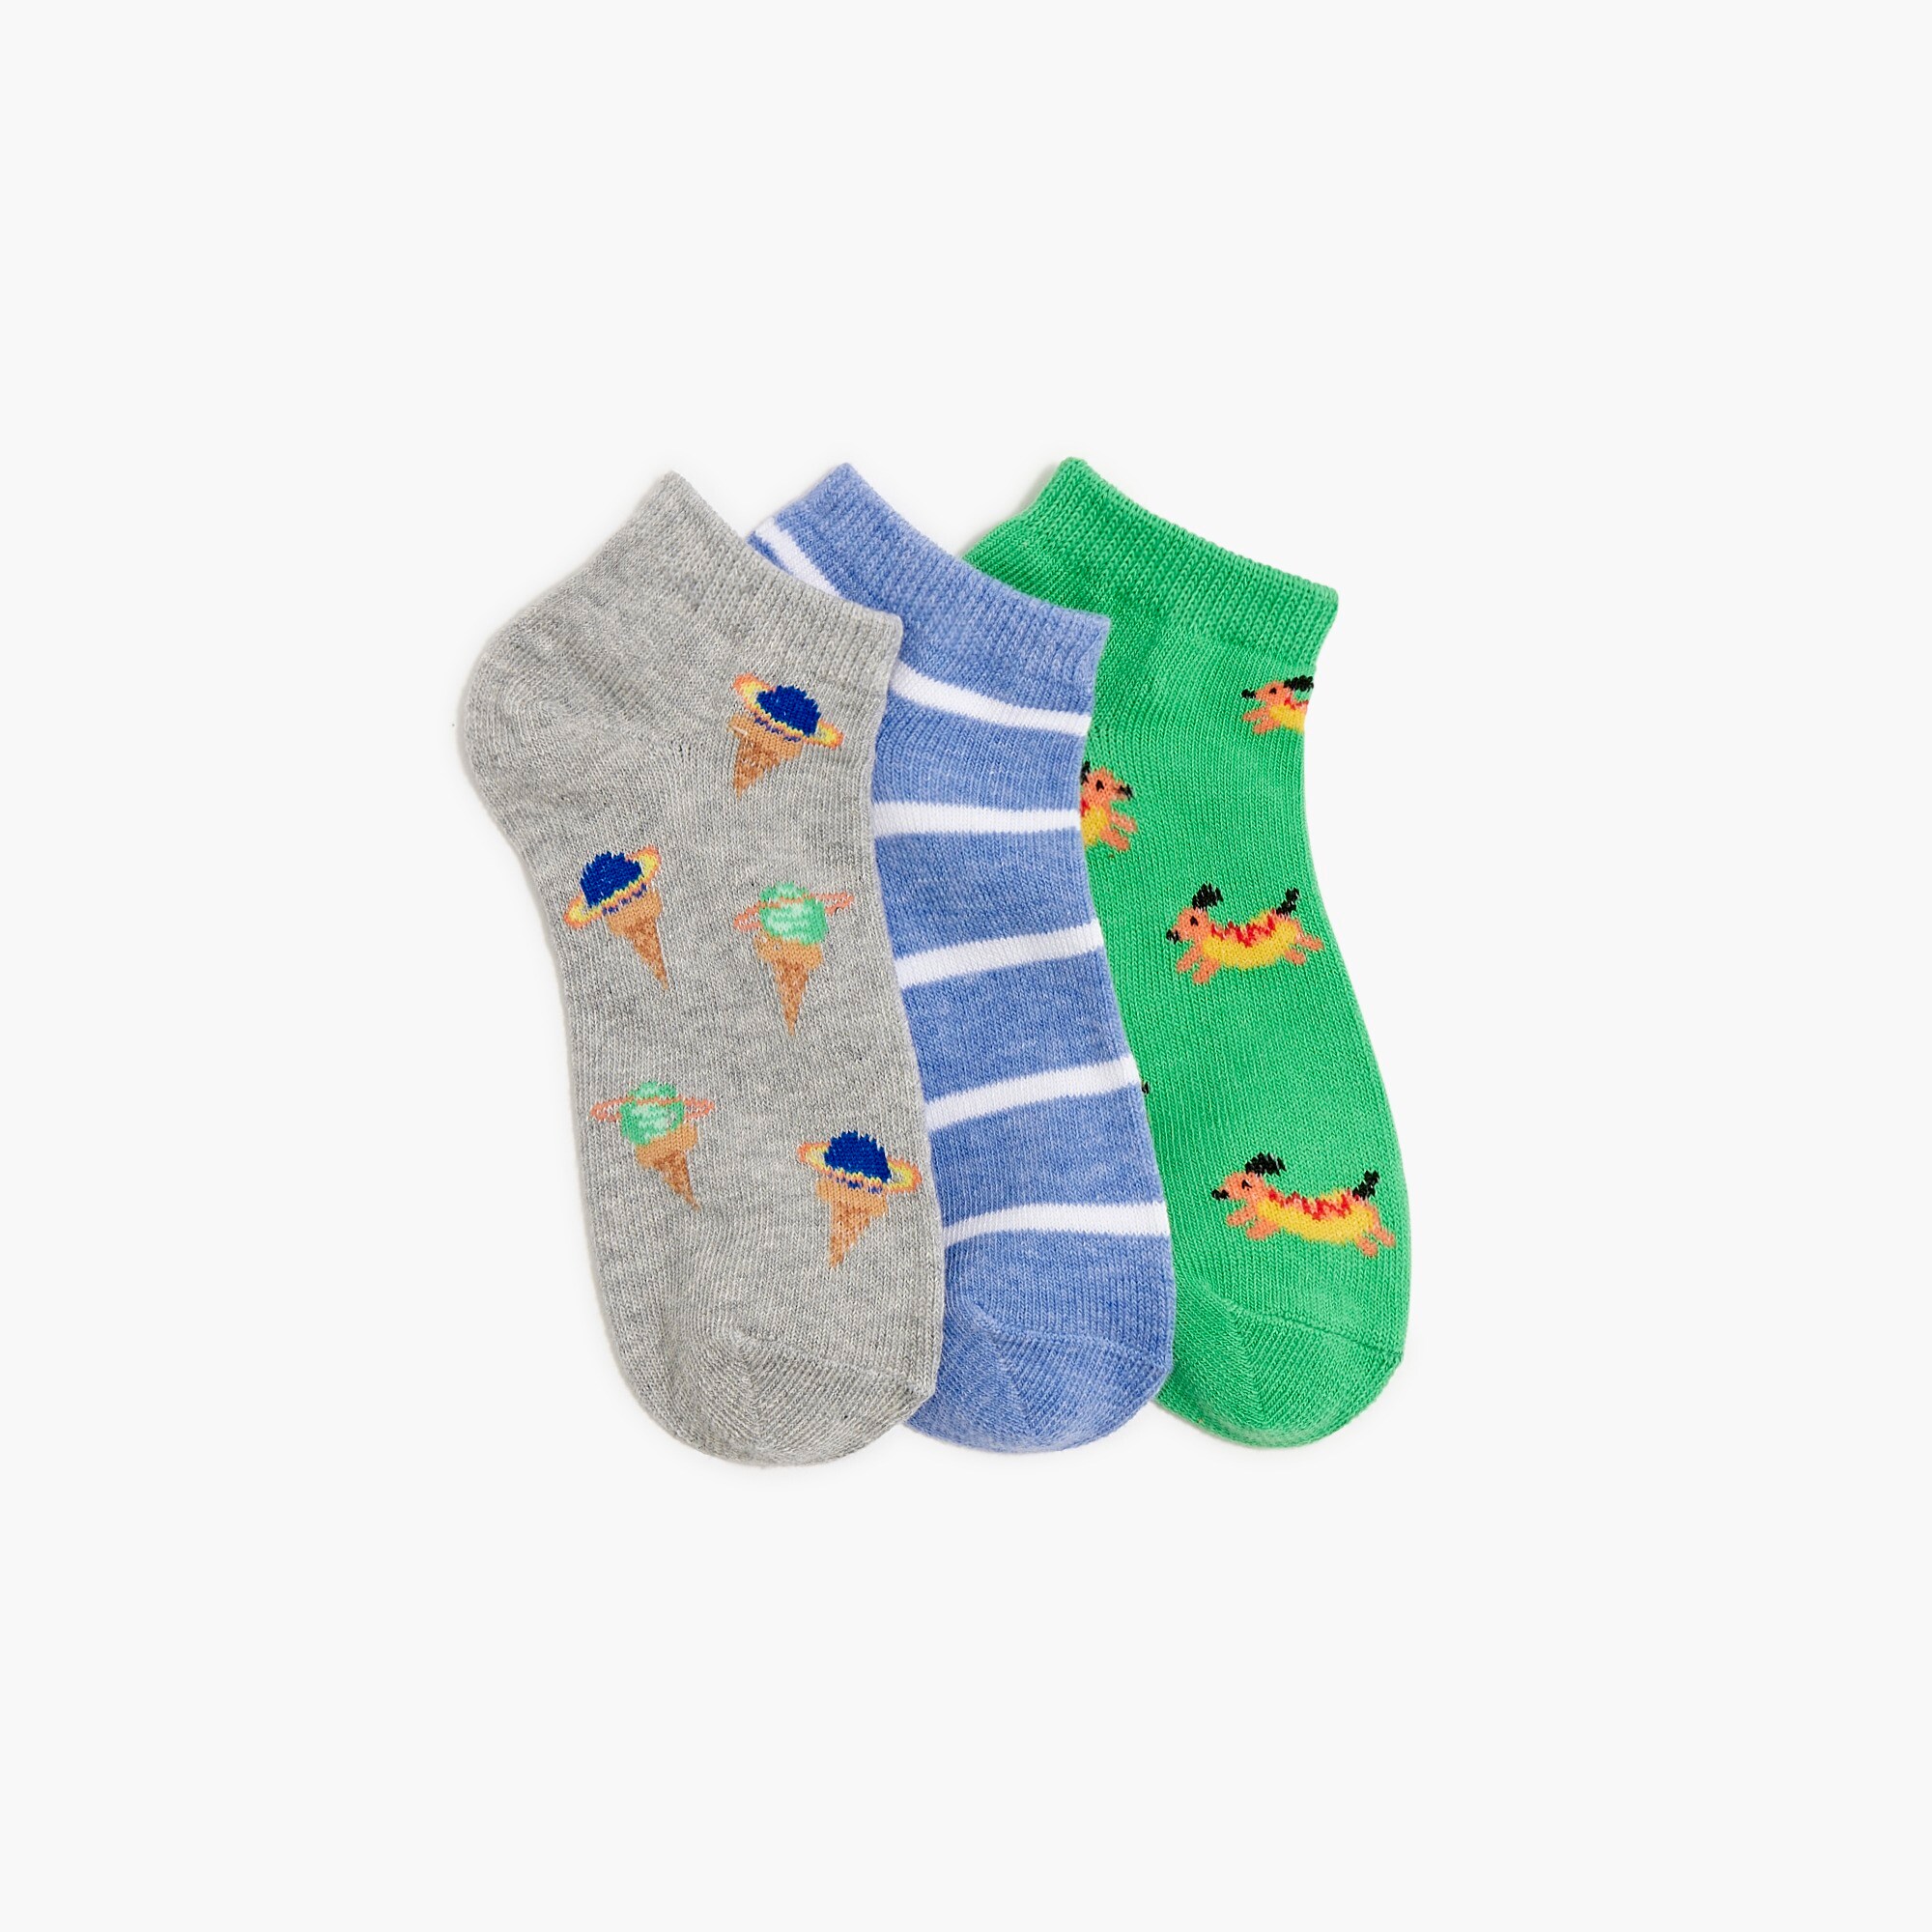  Boys' printed socks pack